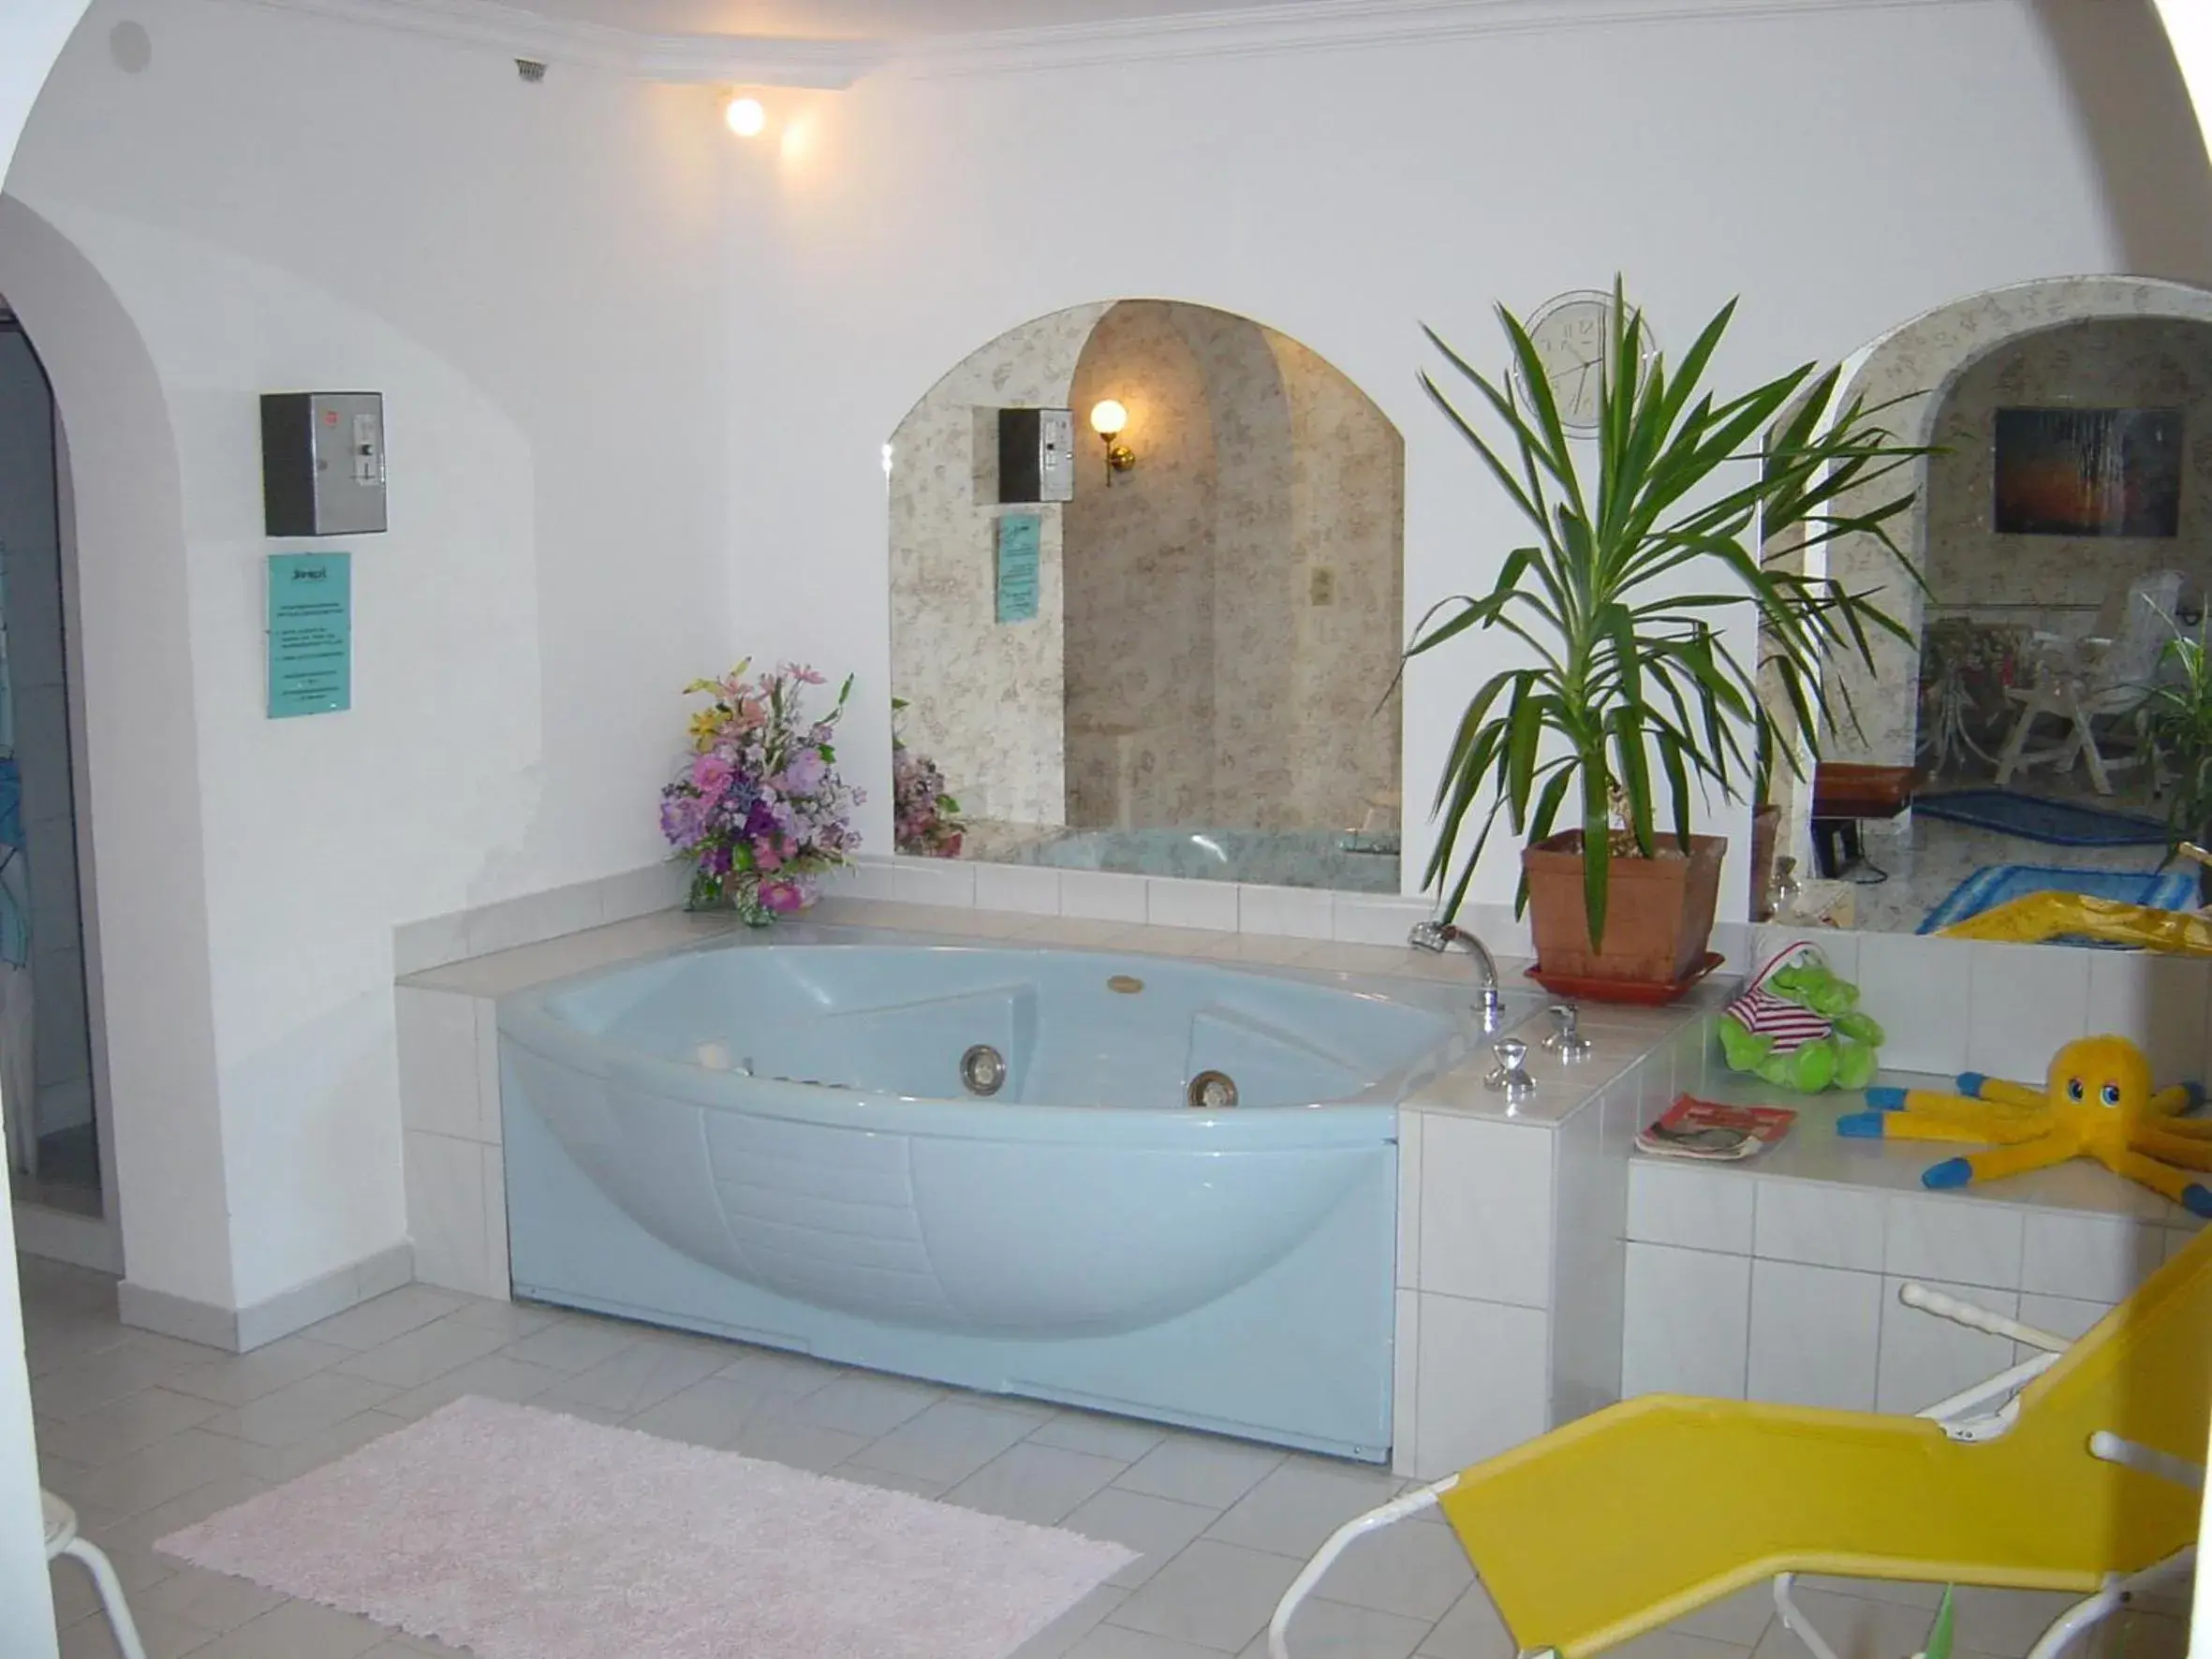 Spa and wellness centre/facilities, Bathroom in Hotel Schöne Aussicht